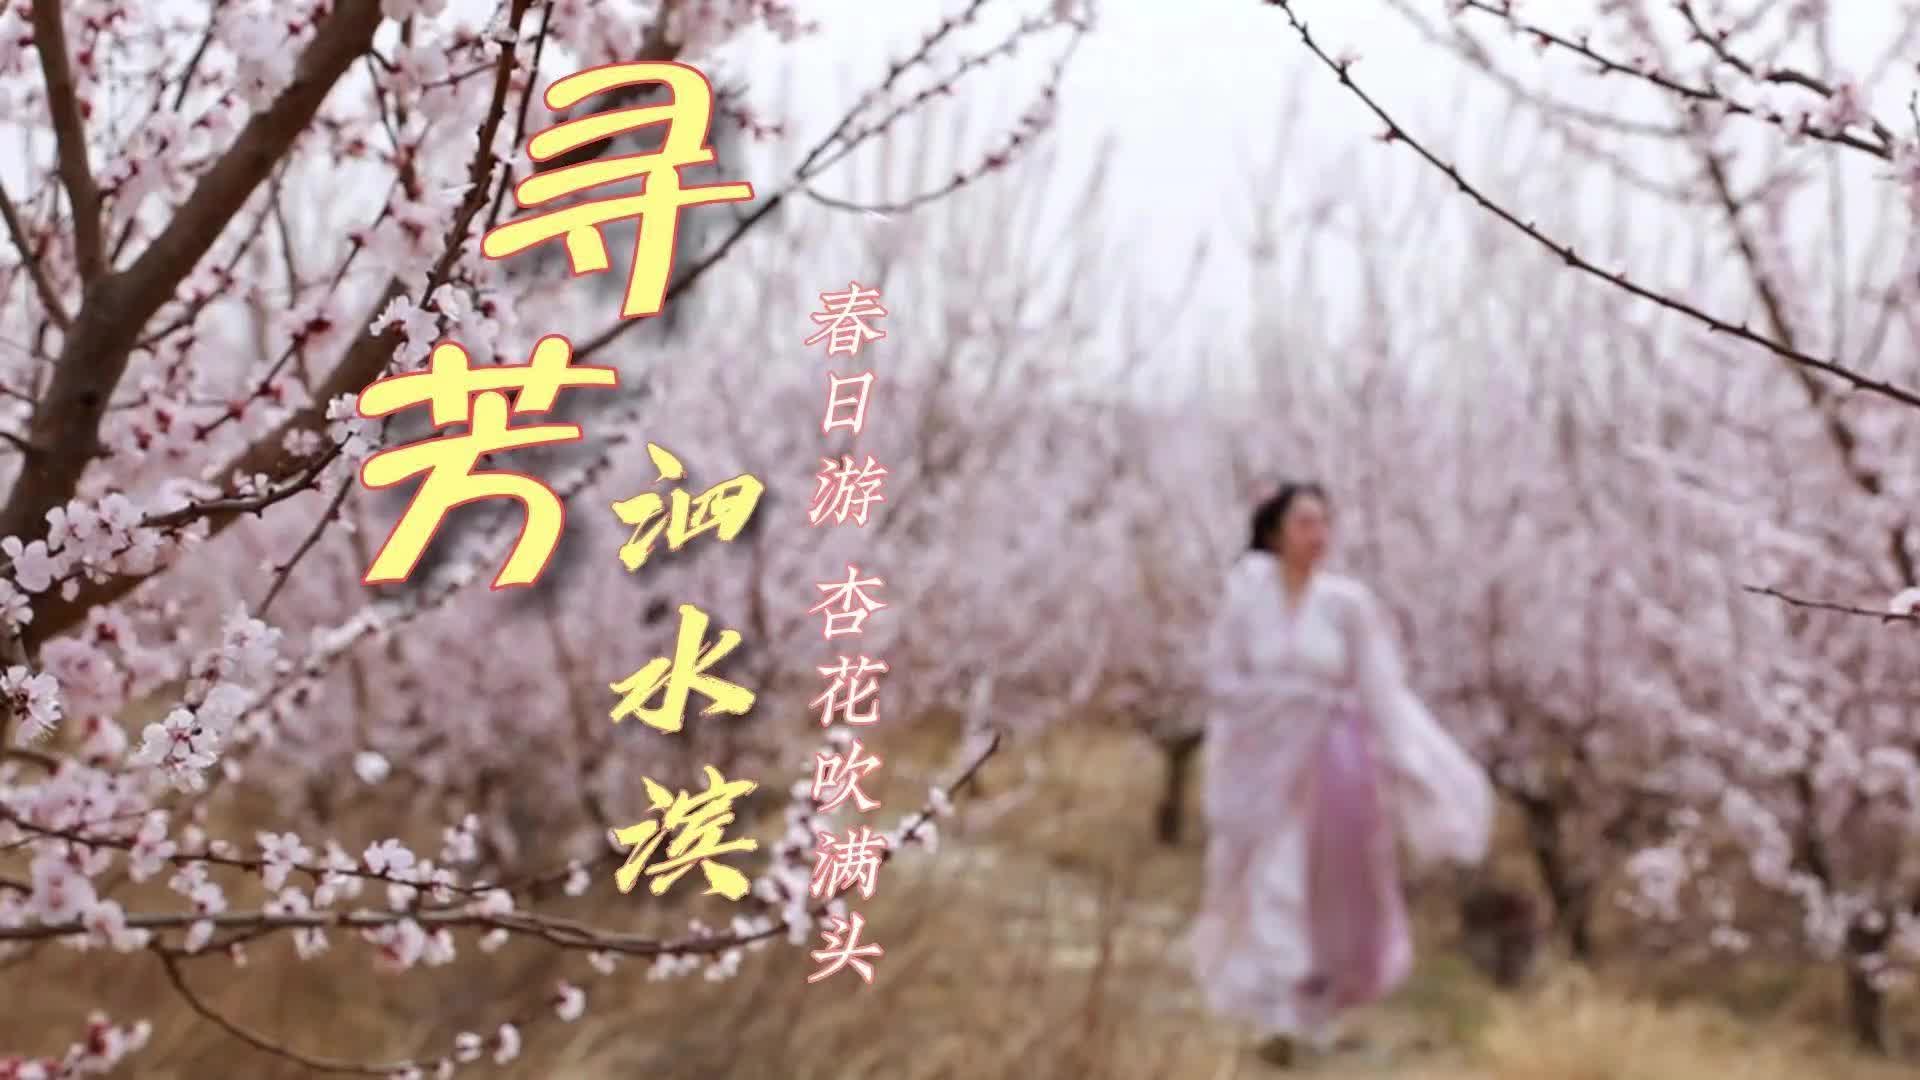 更济宁 | 寻芳泗水滨——春日游 杏花吹满头